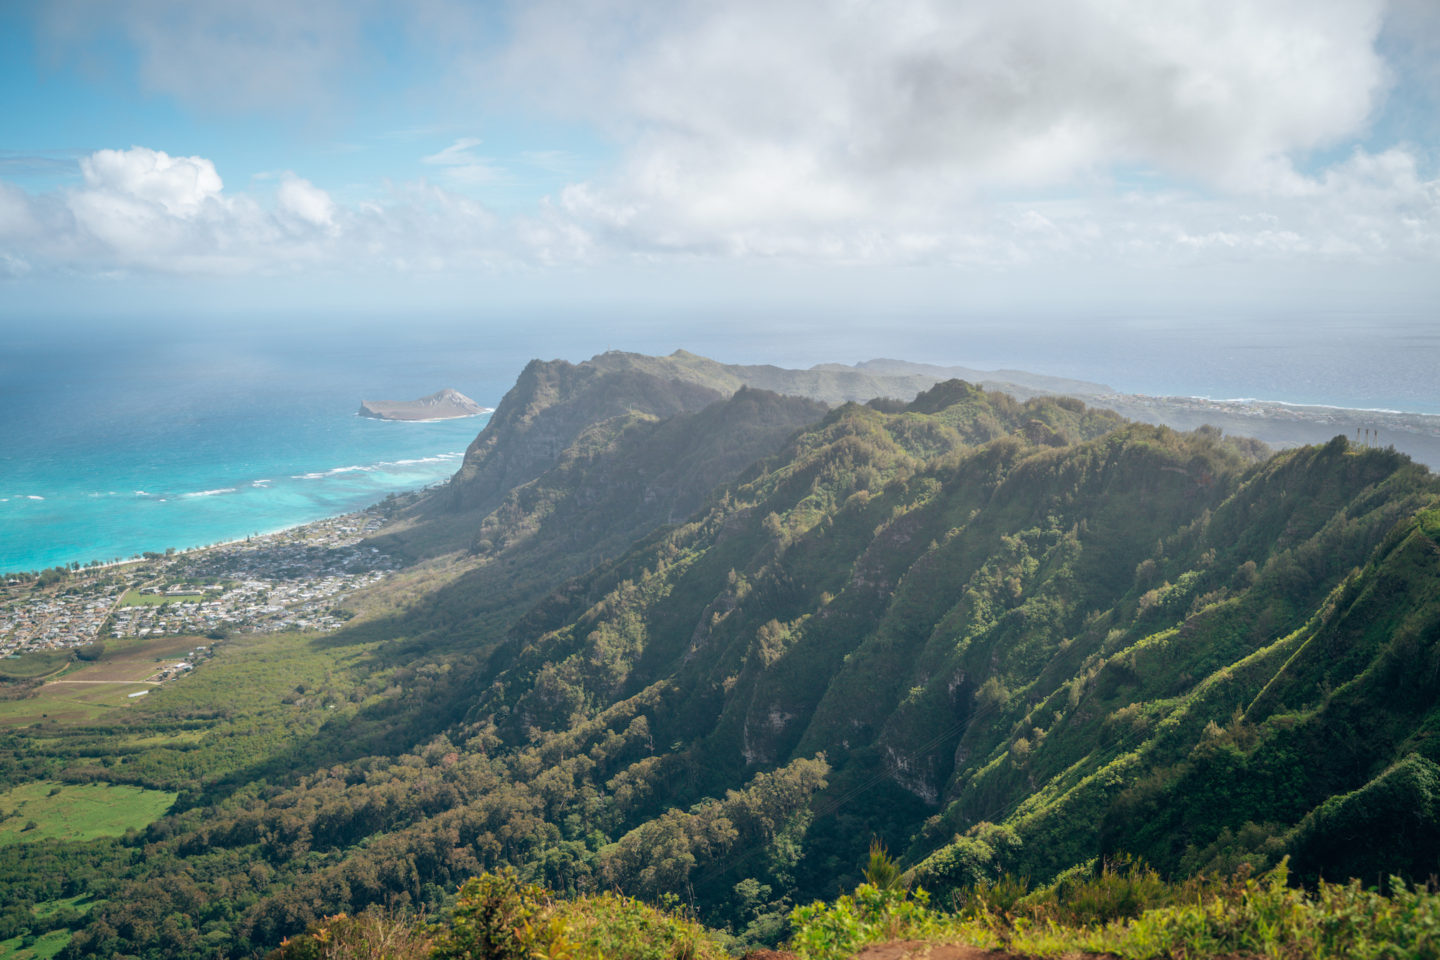 View of Waimanalo Bay from Kuli'ou'ou Ridge - Kailua, Oahu Hawai'i